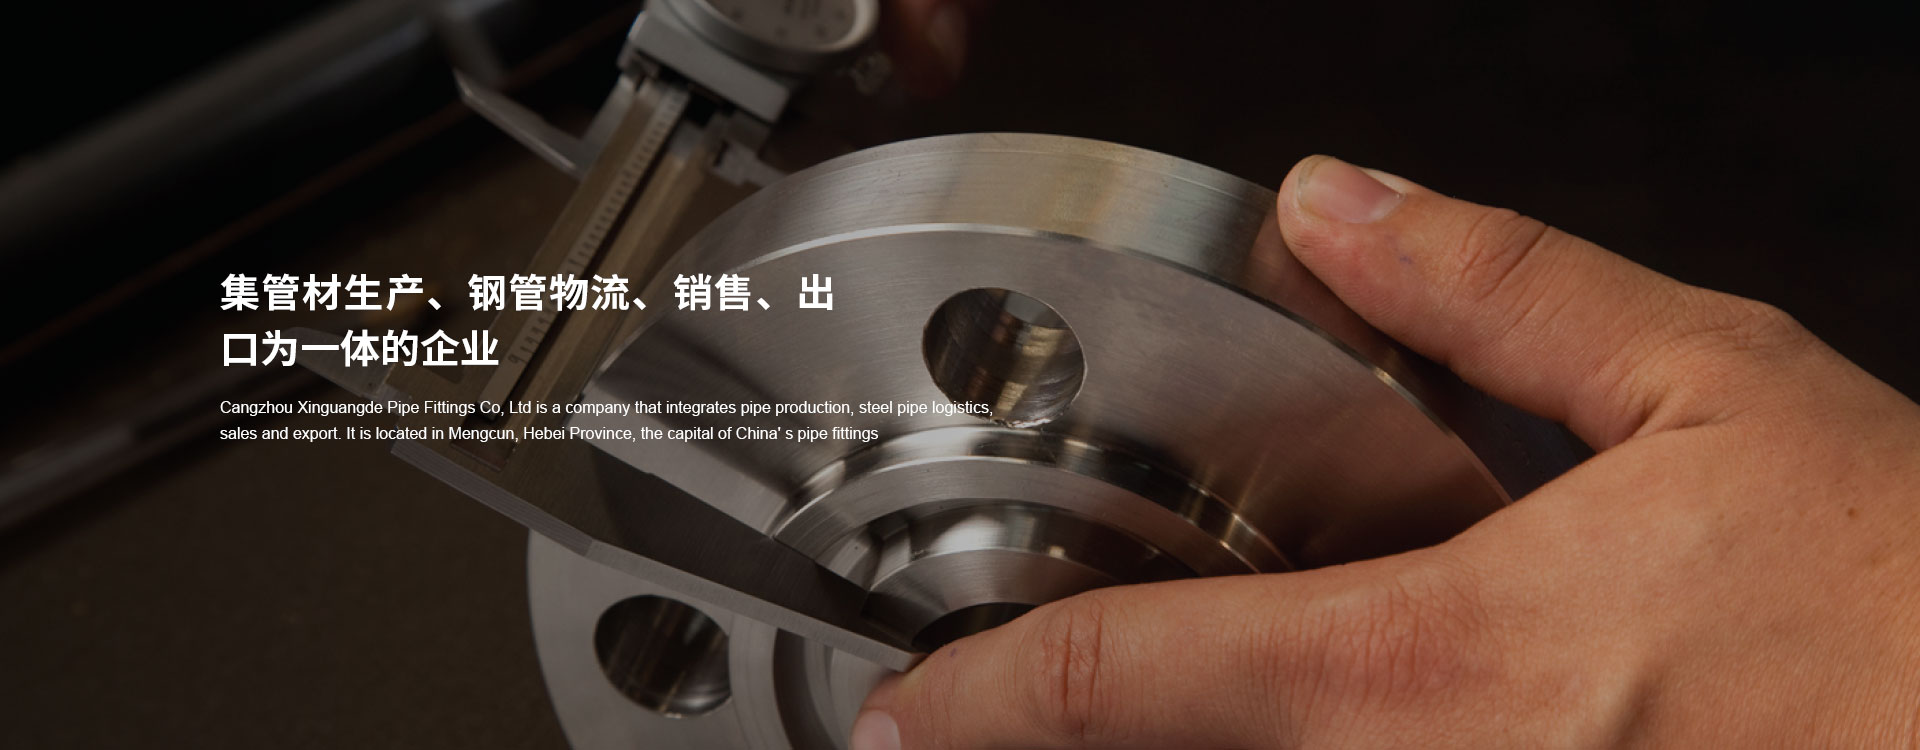 滄州鑫廣德管件制造有限公司是一家專業生產聚氨酯直埋式保溫管和3PE防腐無縫鋼管的廠家